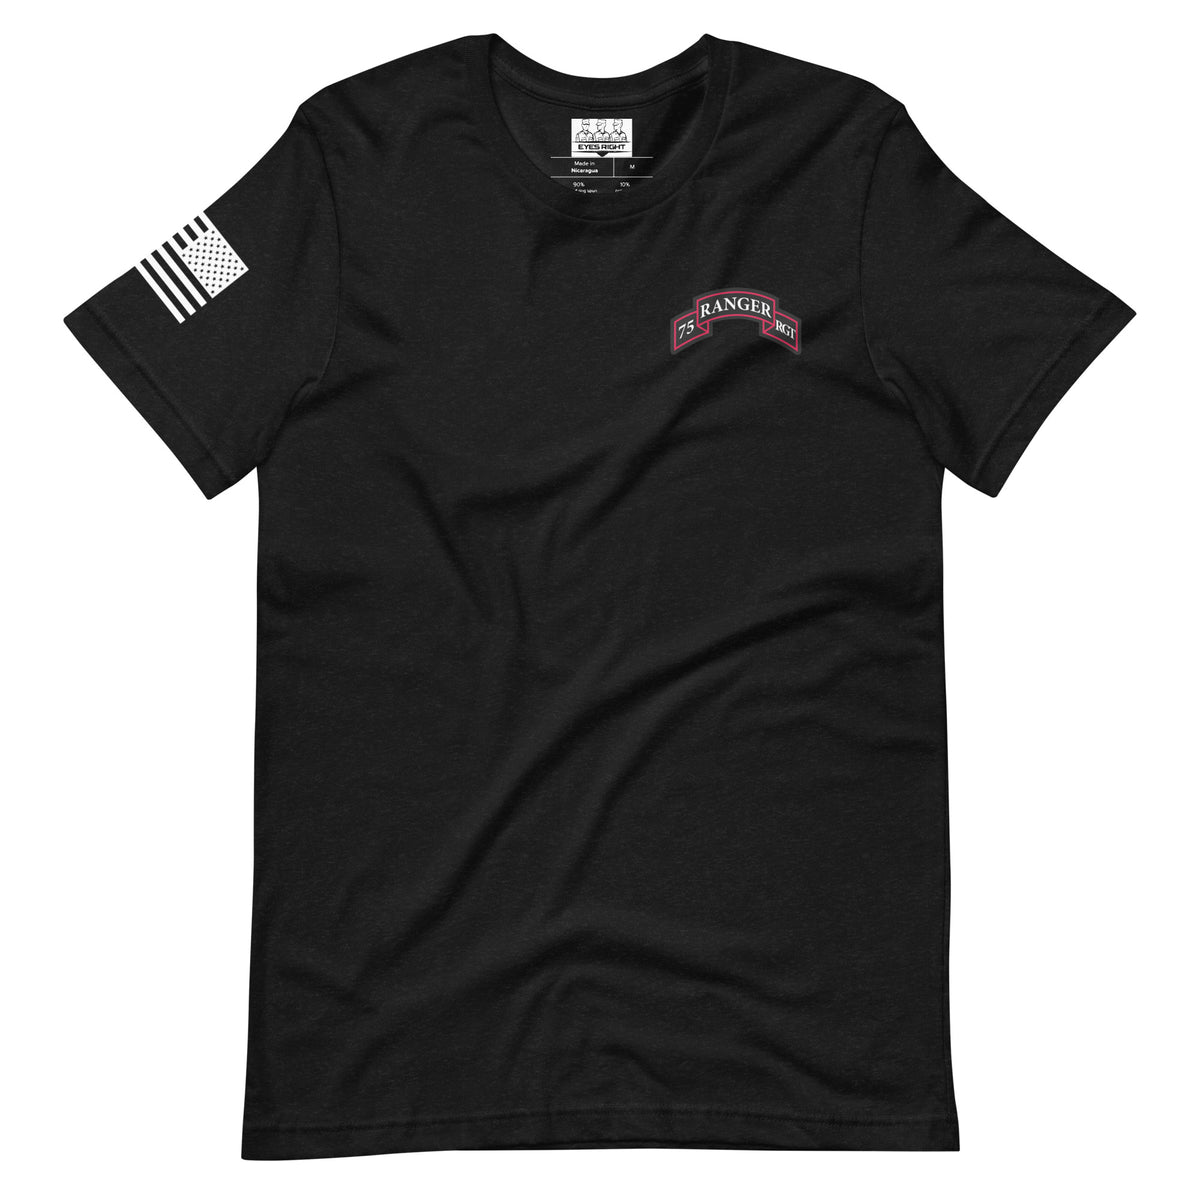 Ranger Creed T-shirt